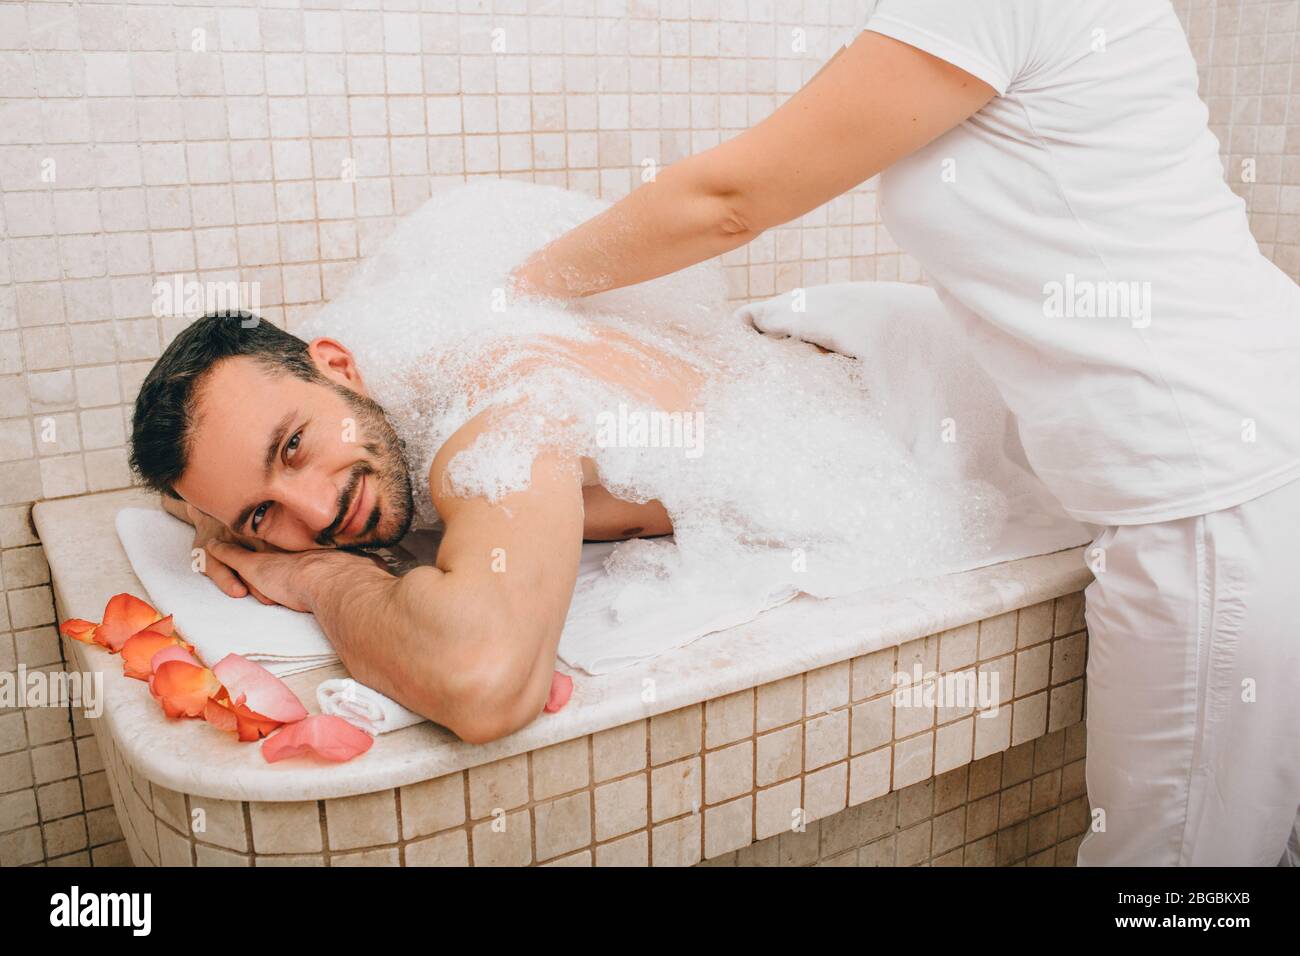 Turco che si gode massaggio in schiuma in un bagno turco. L'operatore dell'hammam lava la pelle degli uomini. Massaggio in schiuma Foto Stock